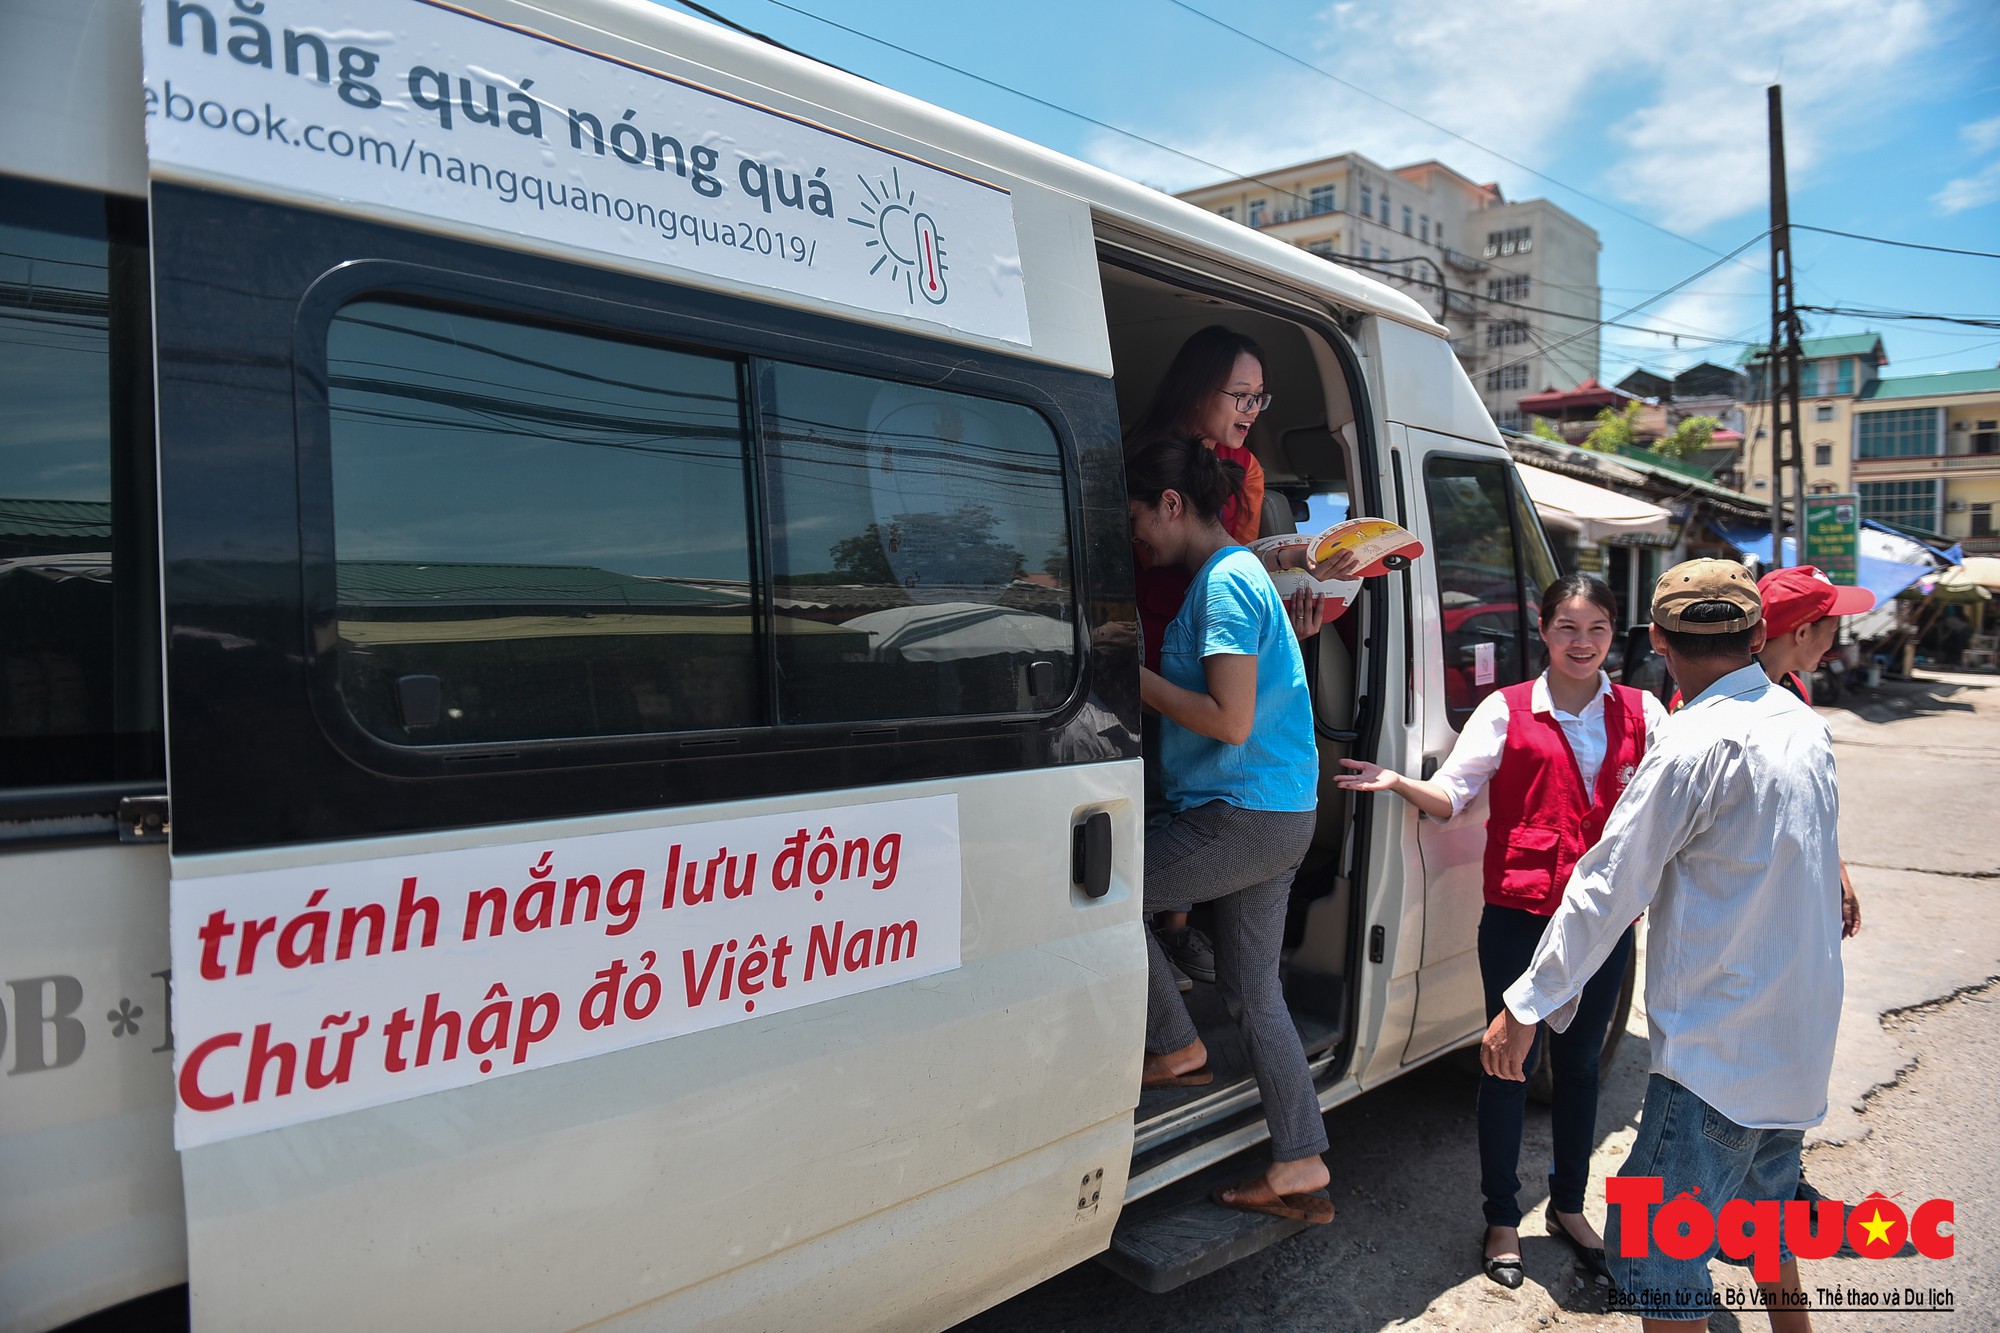 Hà Nội Lần đầu tiên xuất hiện điểm tránh nắng lưu động bằng xe bus (15)